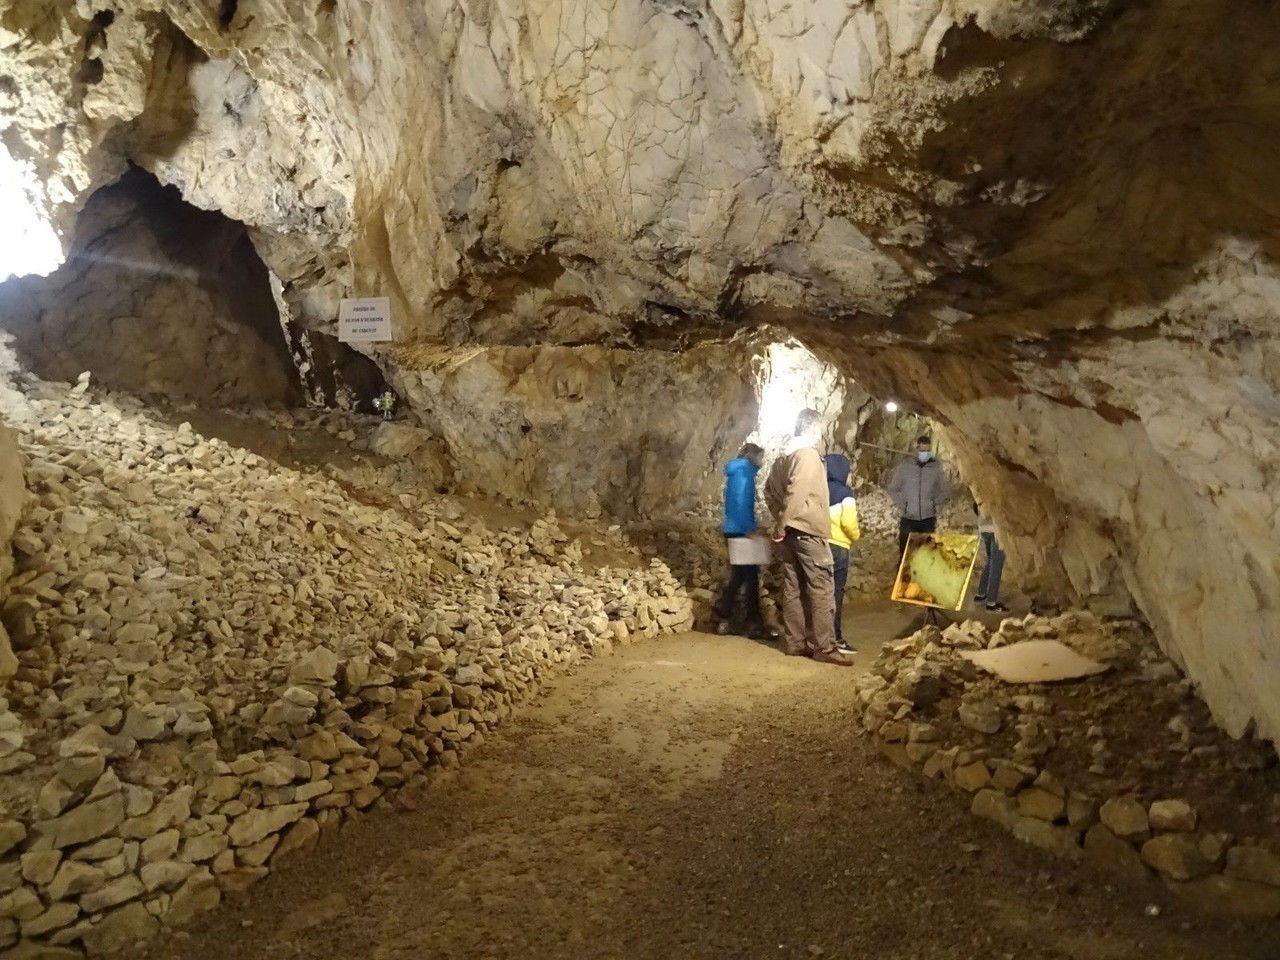 La grotte cache de nombreuses galeries et cavités.